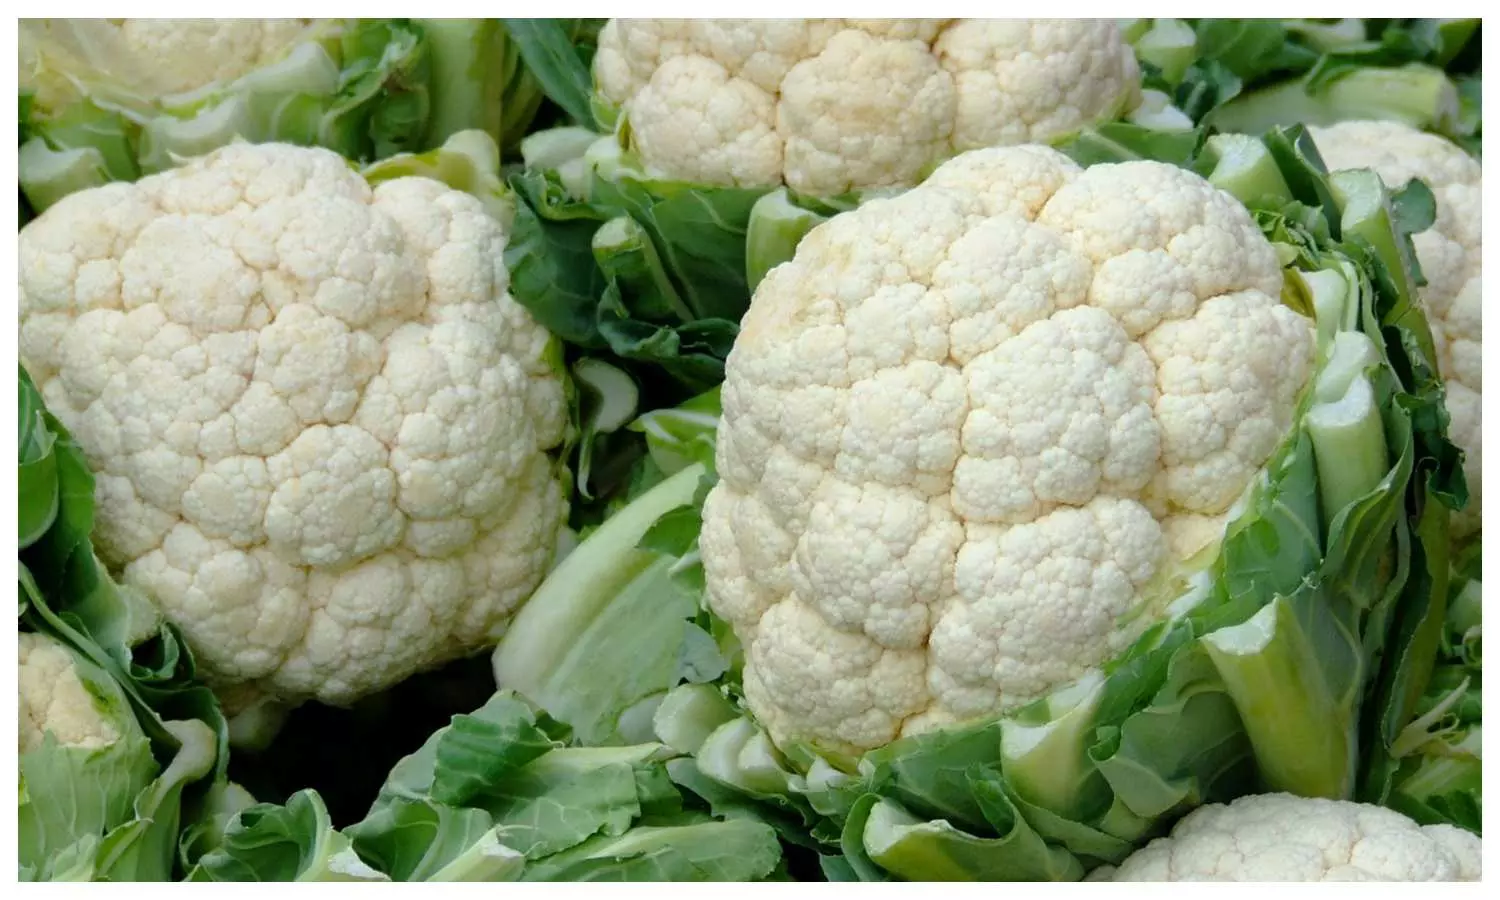 Cauliflower benefits